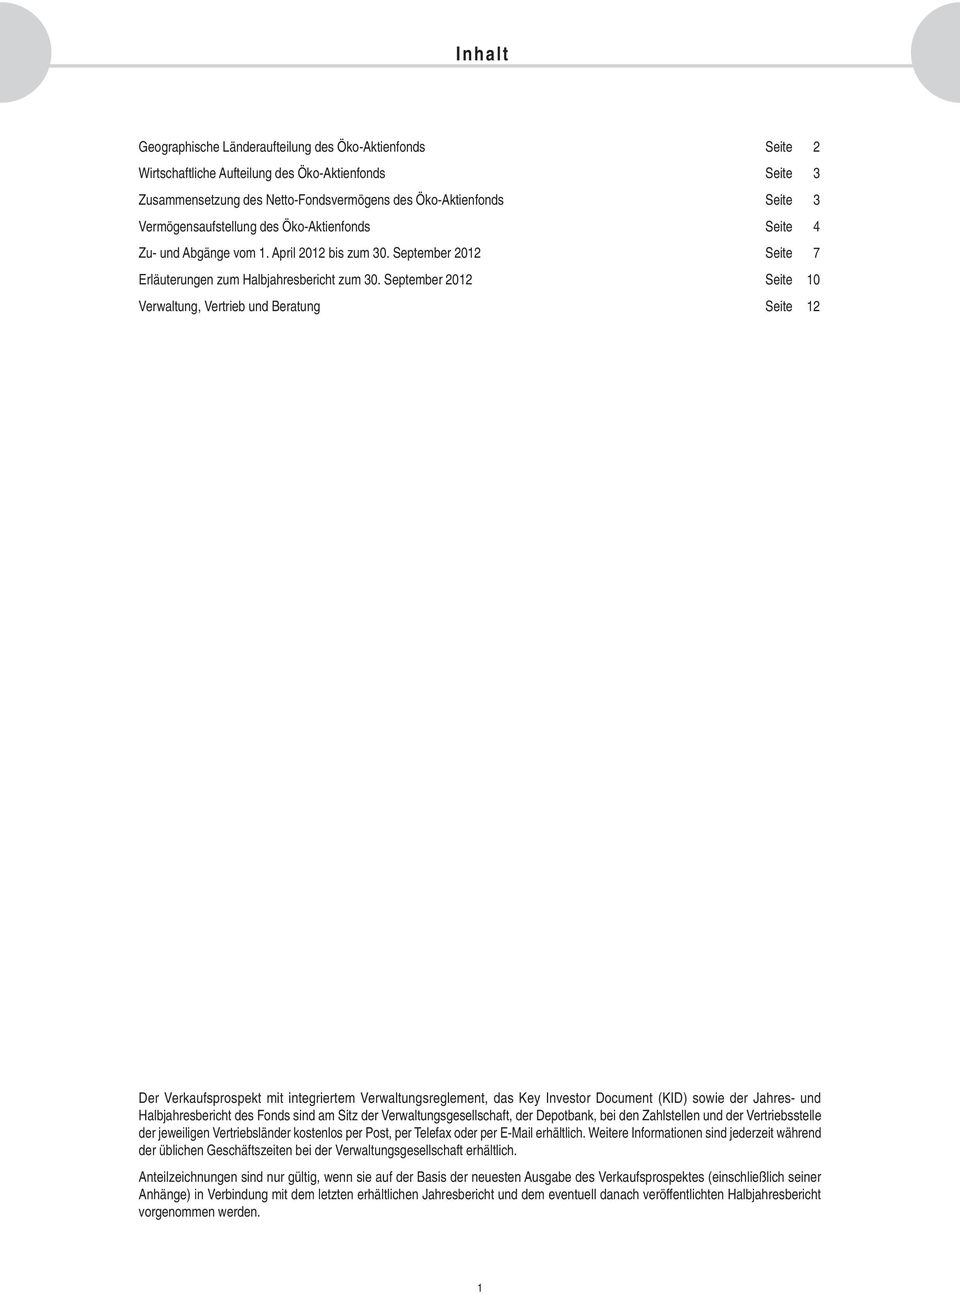 September 2012 Seite 10 Verwaltung, Vertrieb und Beratung Seite 12 Der Verkaufsprospekt mit integriertem Verwaltungsreglement, das Key Investor Document (KID) sowie der Jahres- und Halbjahresbericht